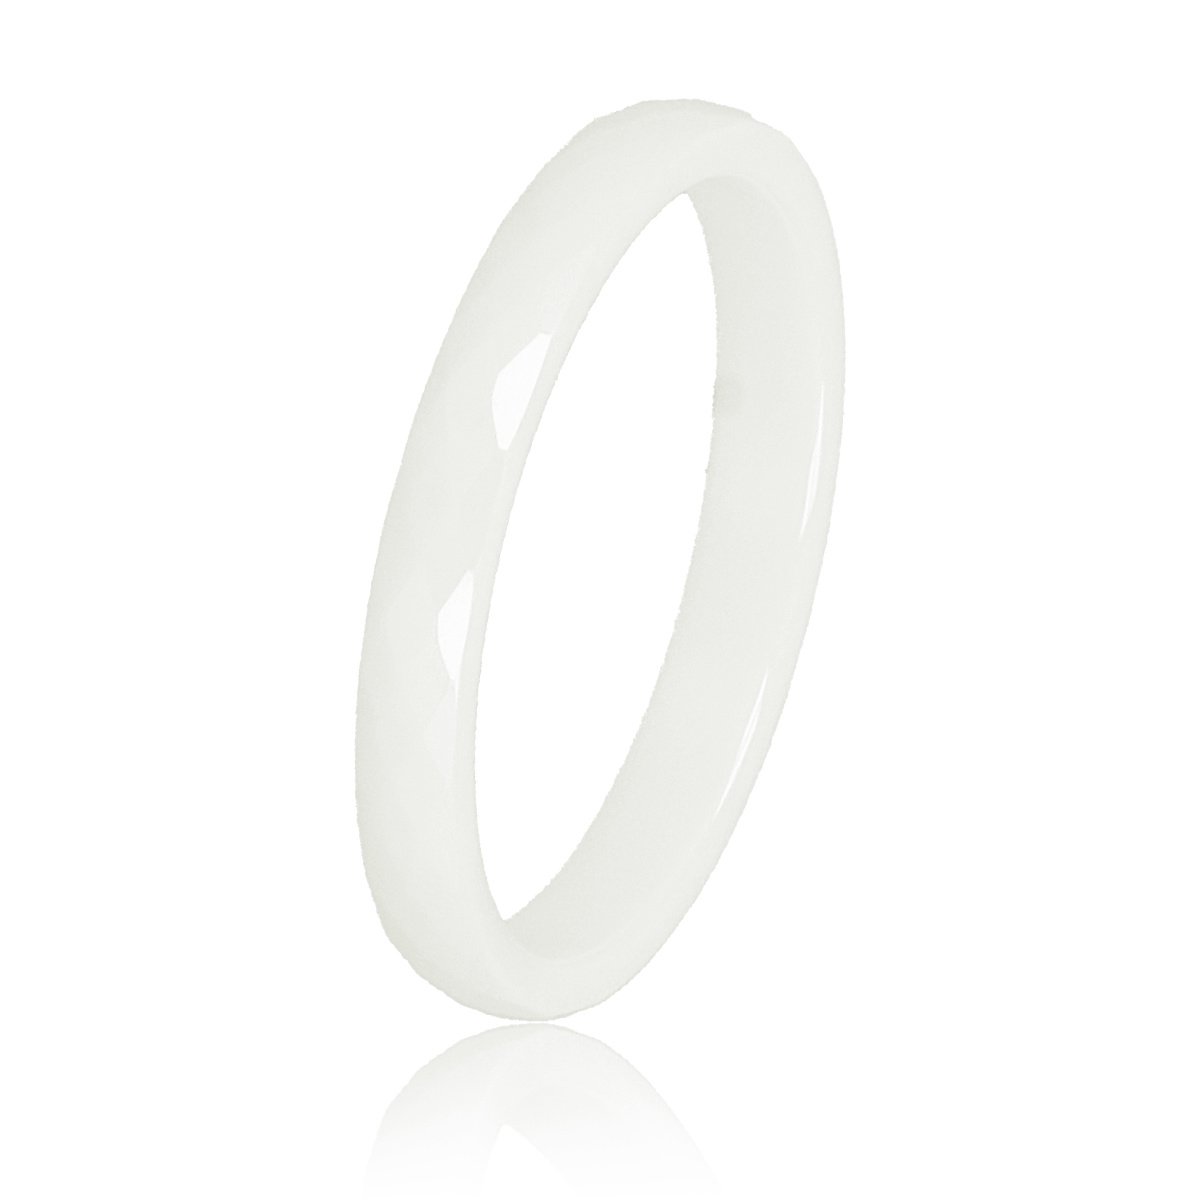 My Bendel - Keramieken ring facet geslepen soft wit 3mm - Keramische, onbreekbare, mooie zacht witte dames ring - Verkleurt niet - Met luxe cadeauverpakking